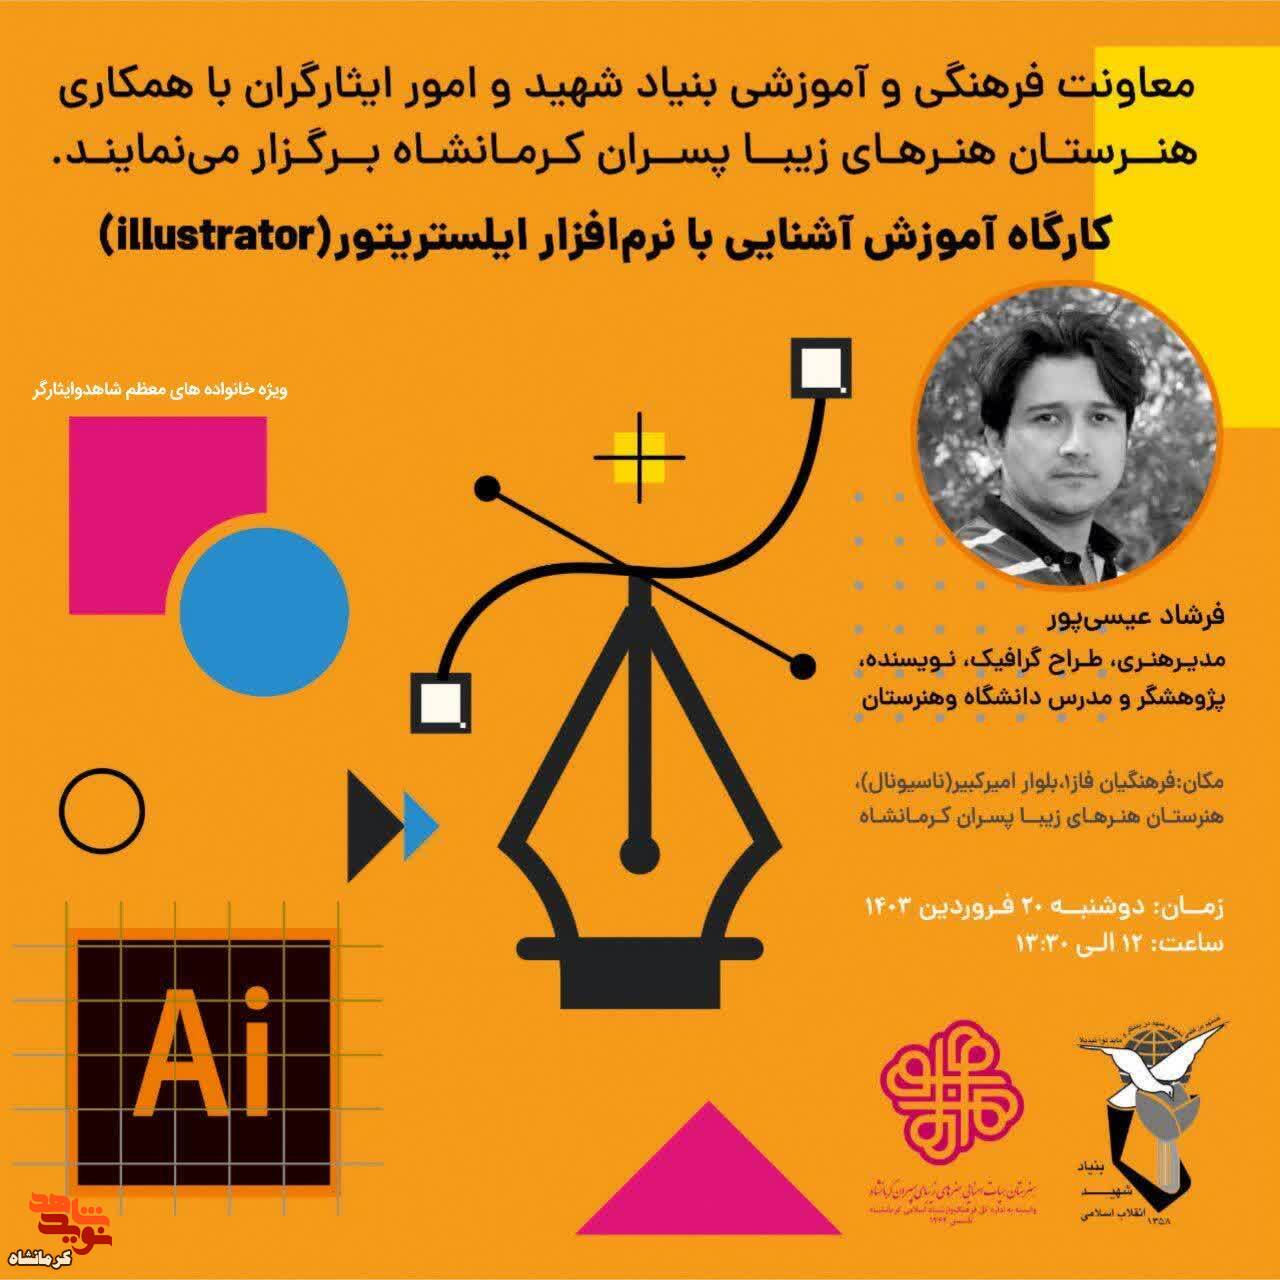 کارگاه آموزشی آشنایی با نرم افزار ایلستریتور در کرمانشاه برگزار می شود